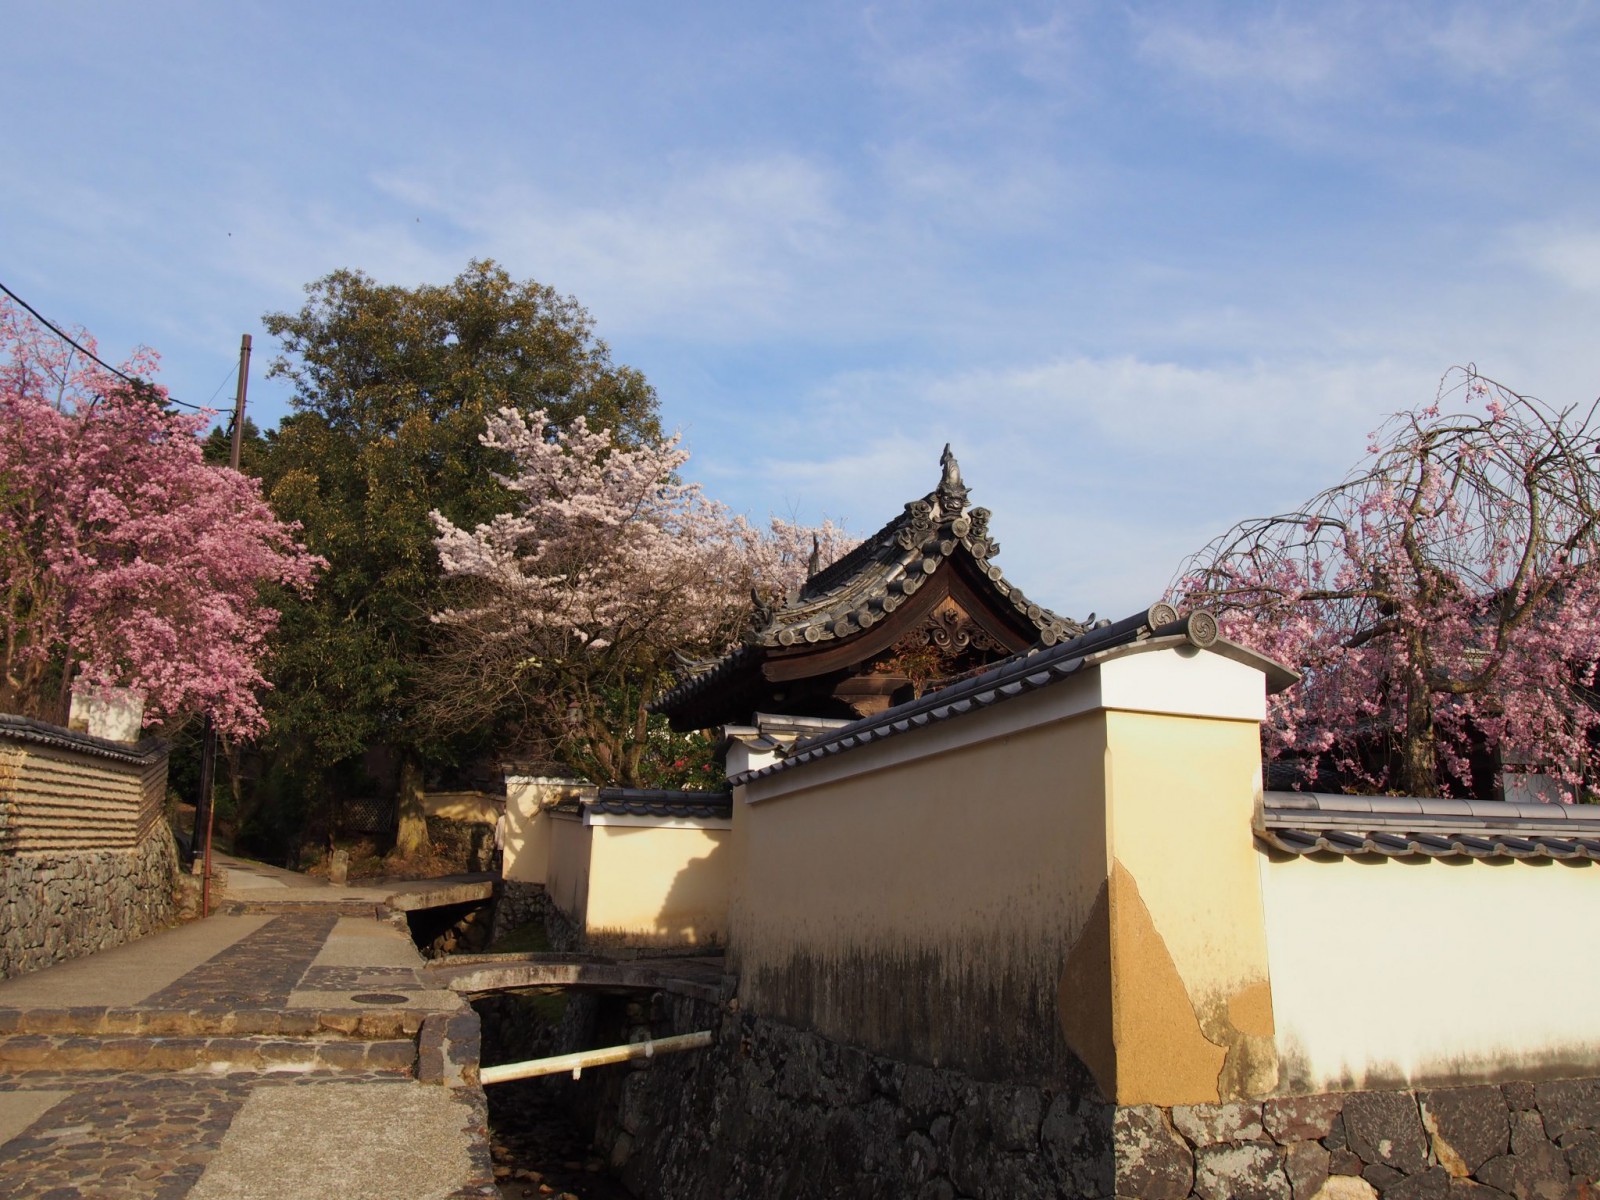 二月堂裏参道】土塀に囲まれた美しく静かな「石畳」の道 | 奈良まちあるき風景紀行